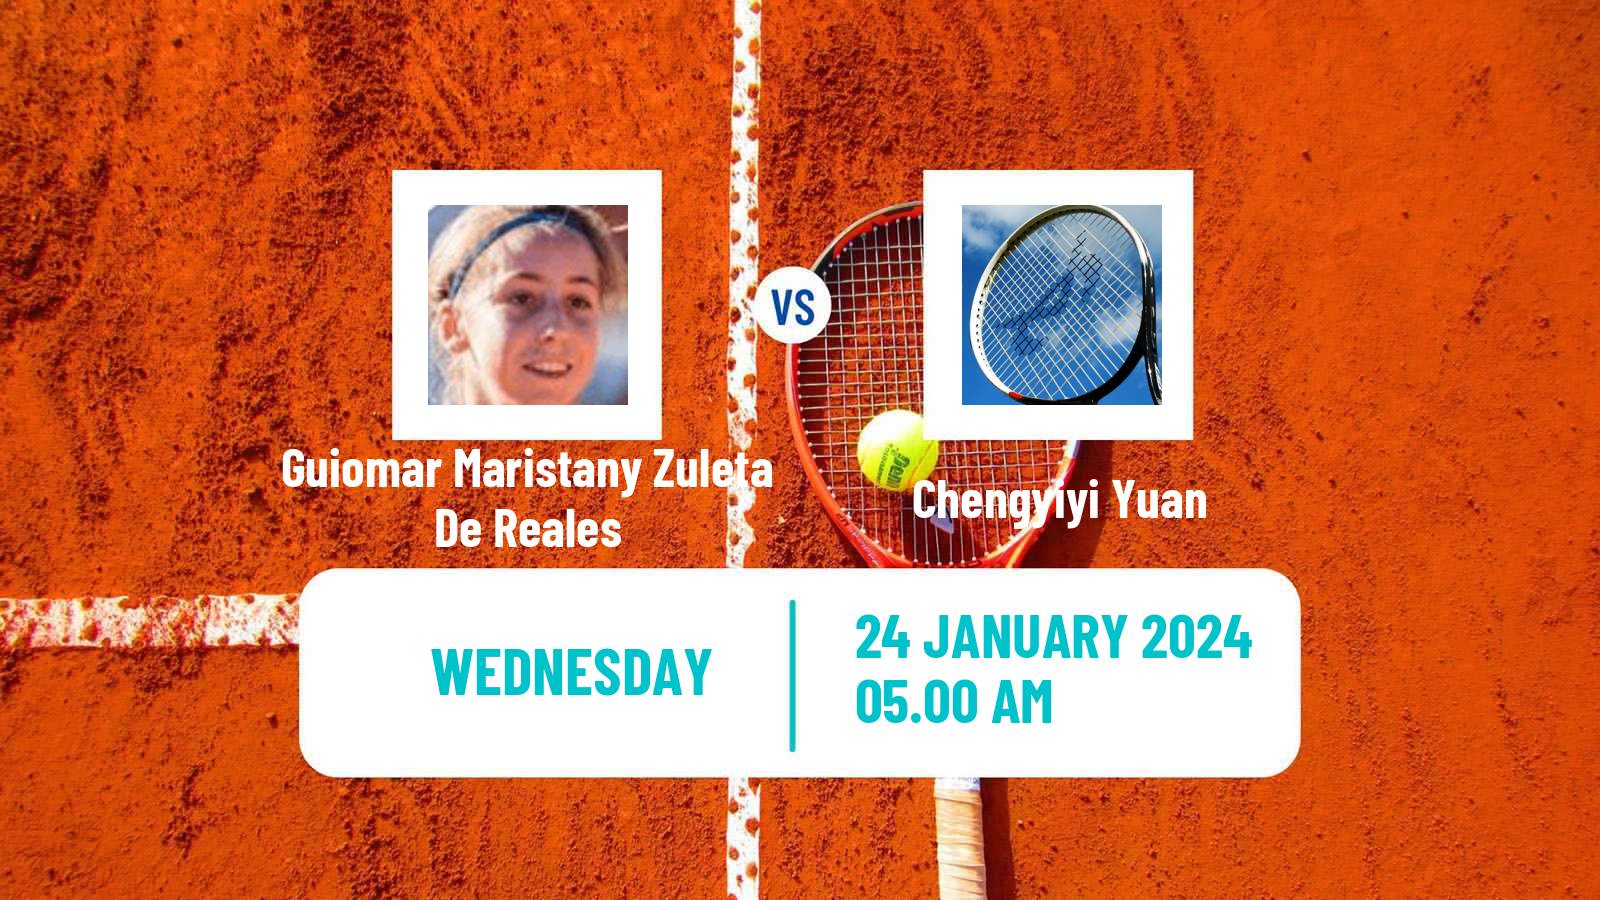 Tennis ITF W35 Monastir 2 Women Guiomar Maristany Zuleta De Reales - Chengyiyi Yuan